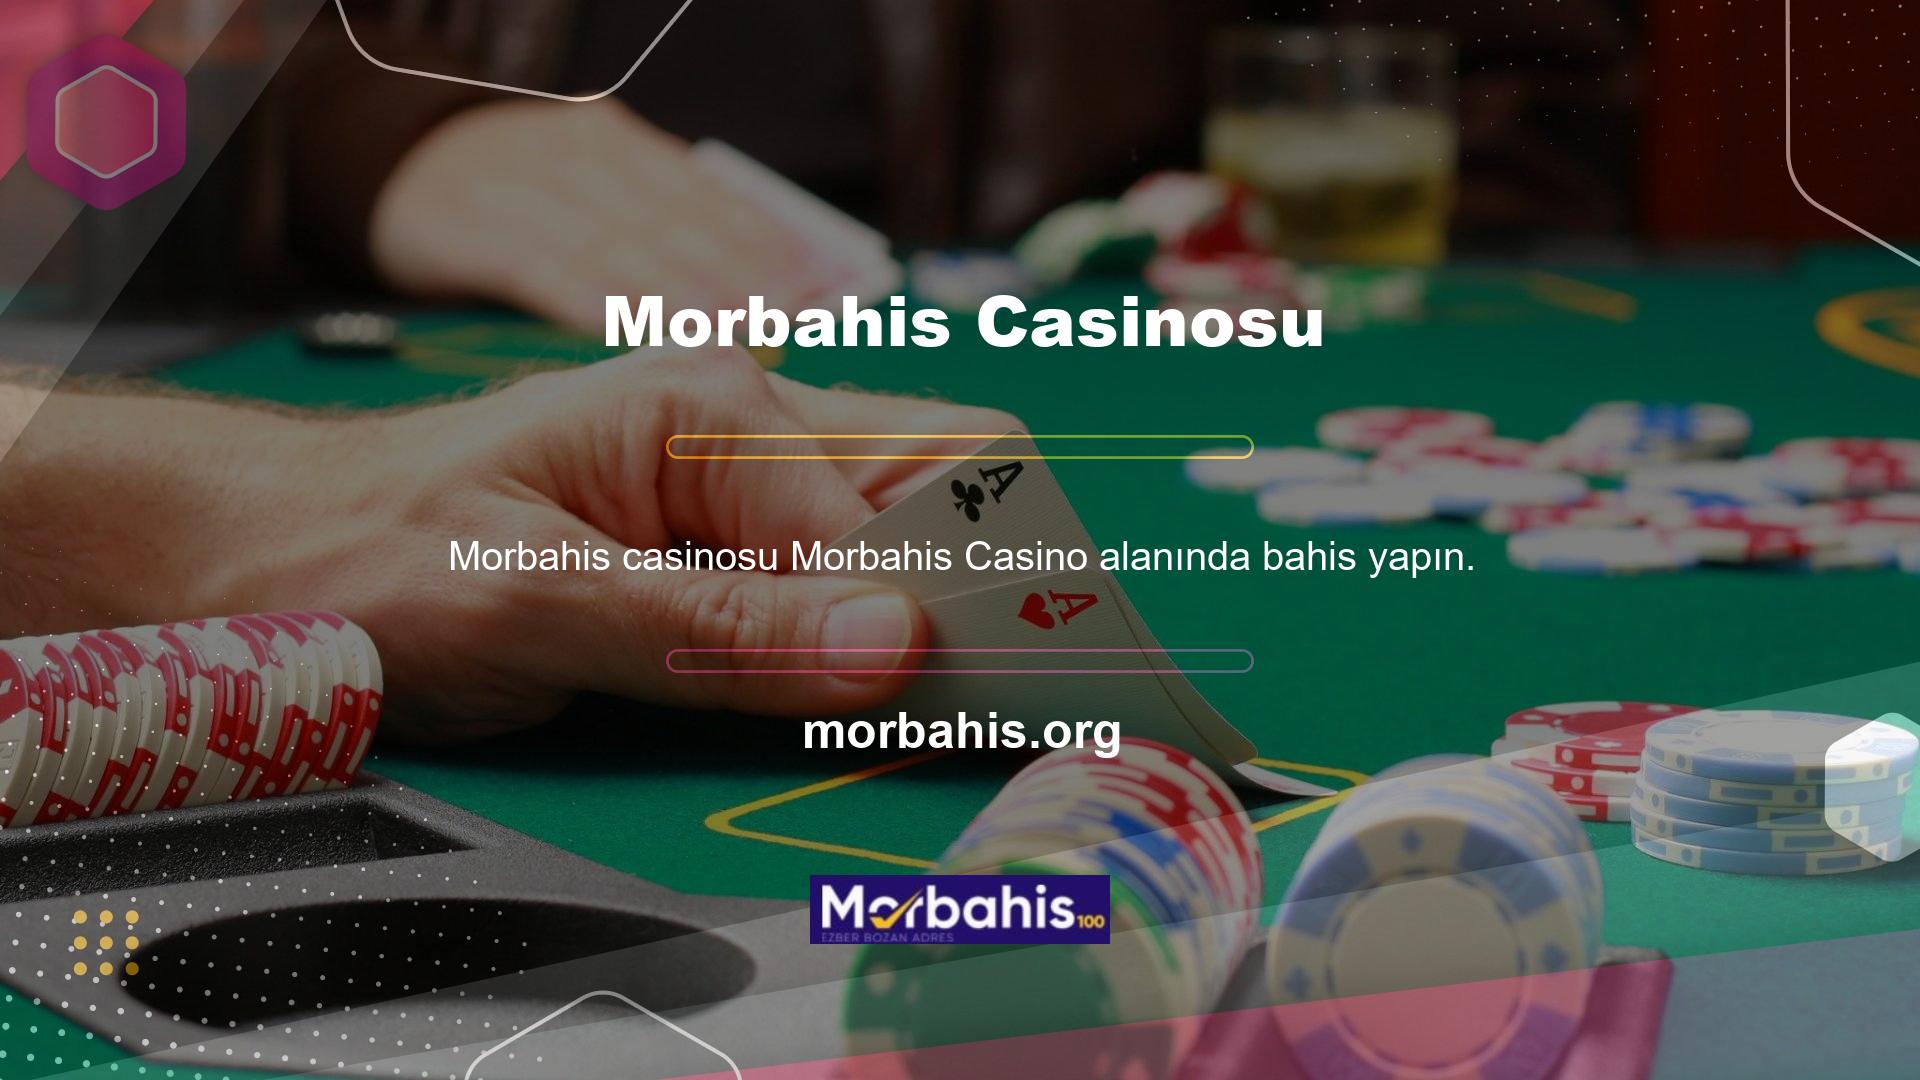 Morbahis Casinoda oynayabilmeniz için önce web sitesinde bir hesap oluşturmanız gerekir